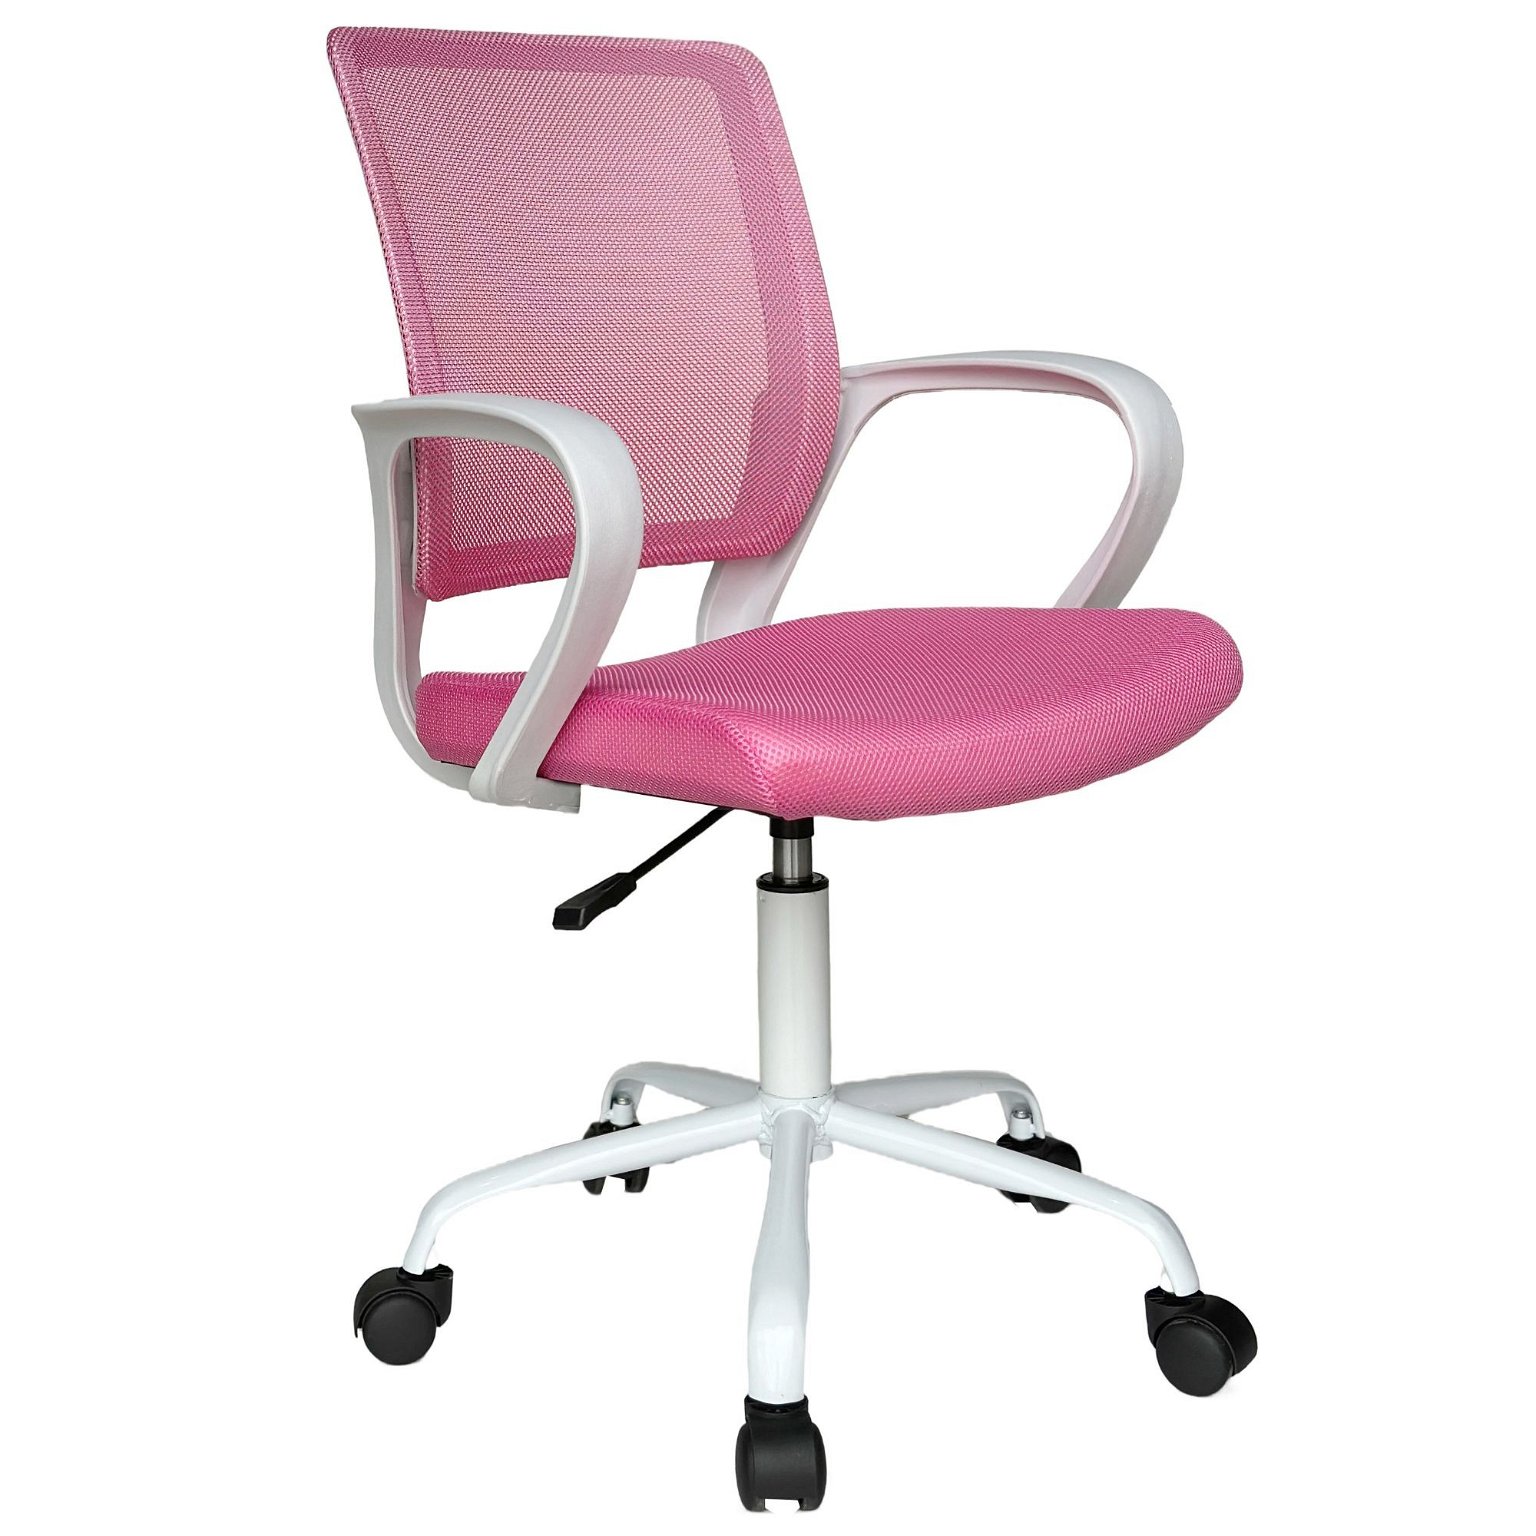 Vaikiška kėdė FD-6, balta/rožinė - 1